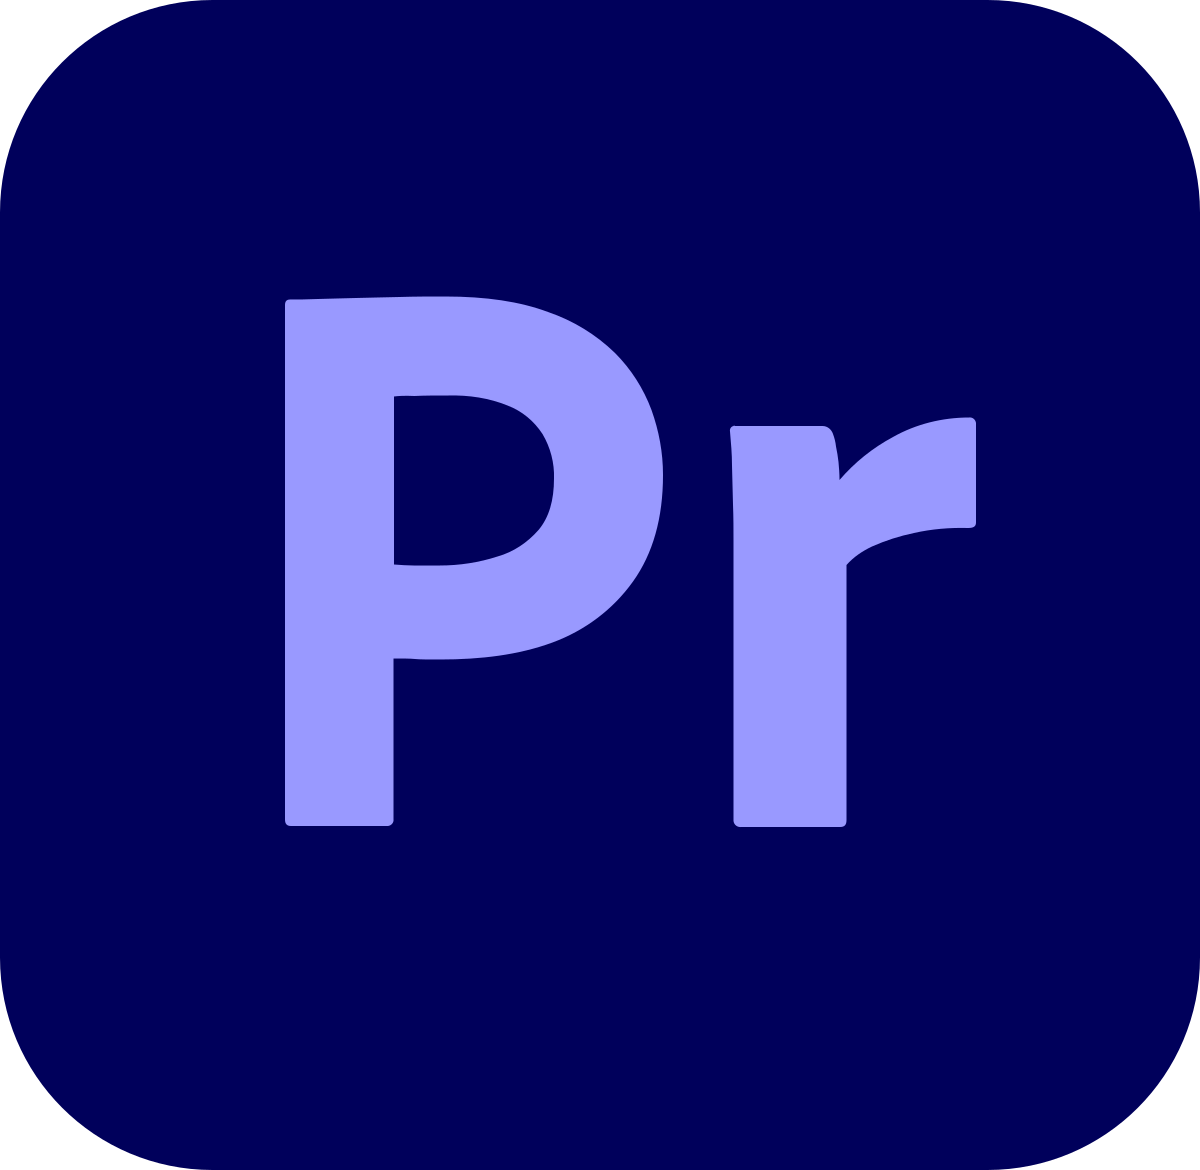 adobe premiere pro mac free download